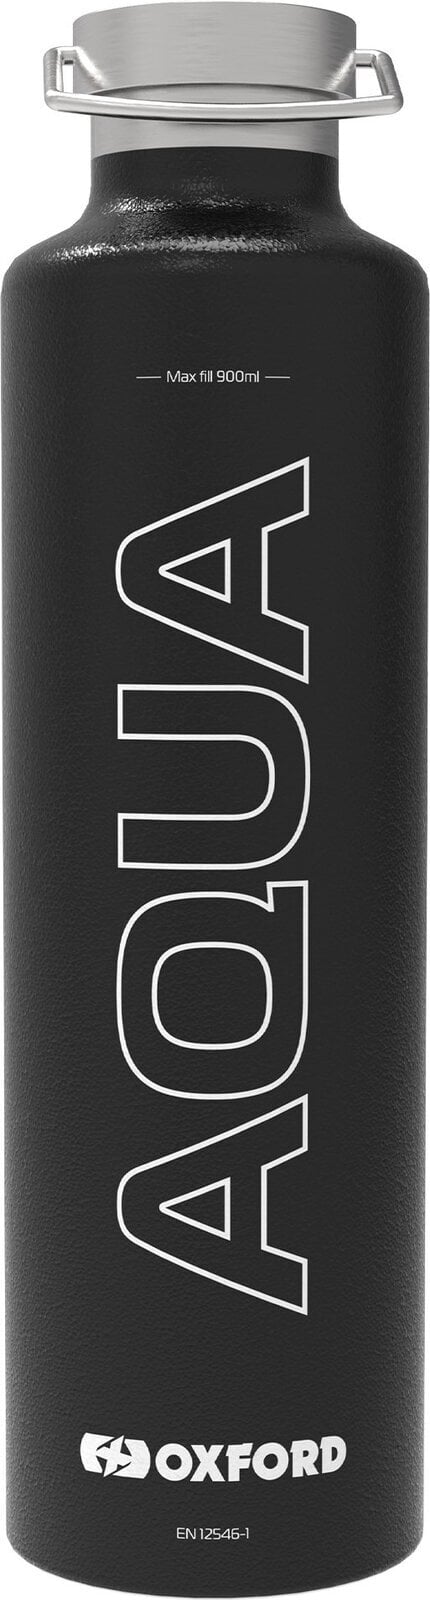 Ostatné príslušenstvo pre motocykle Oxford Aqua 1.0L Insulated Flask